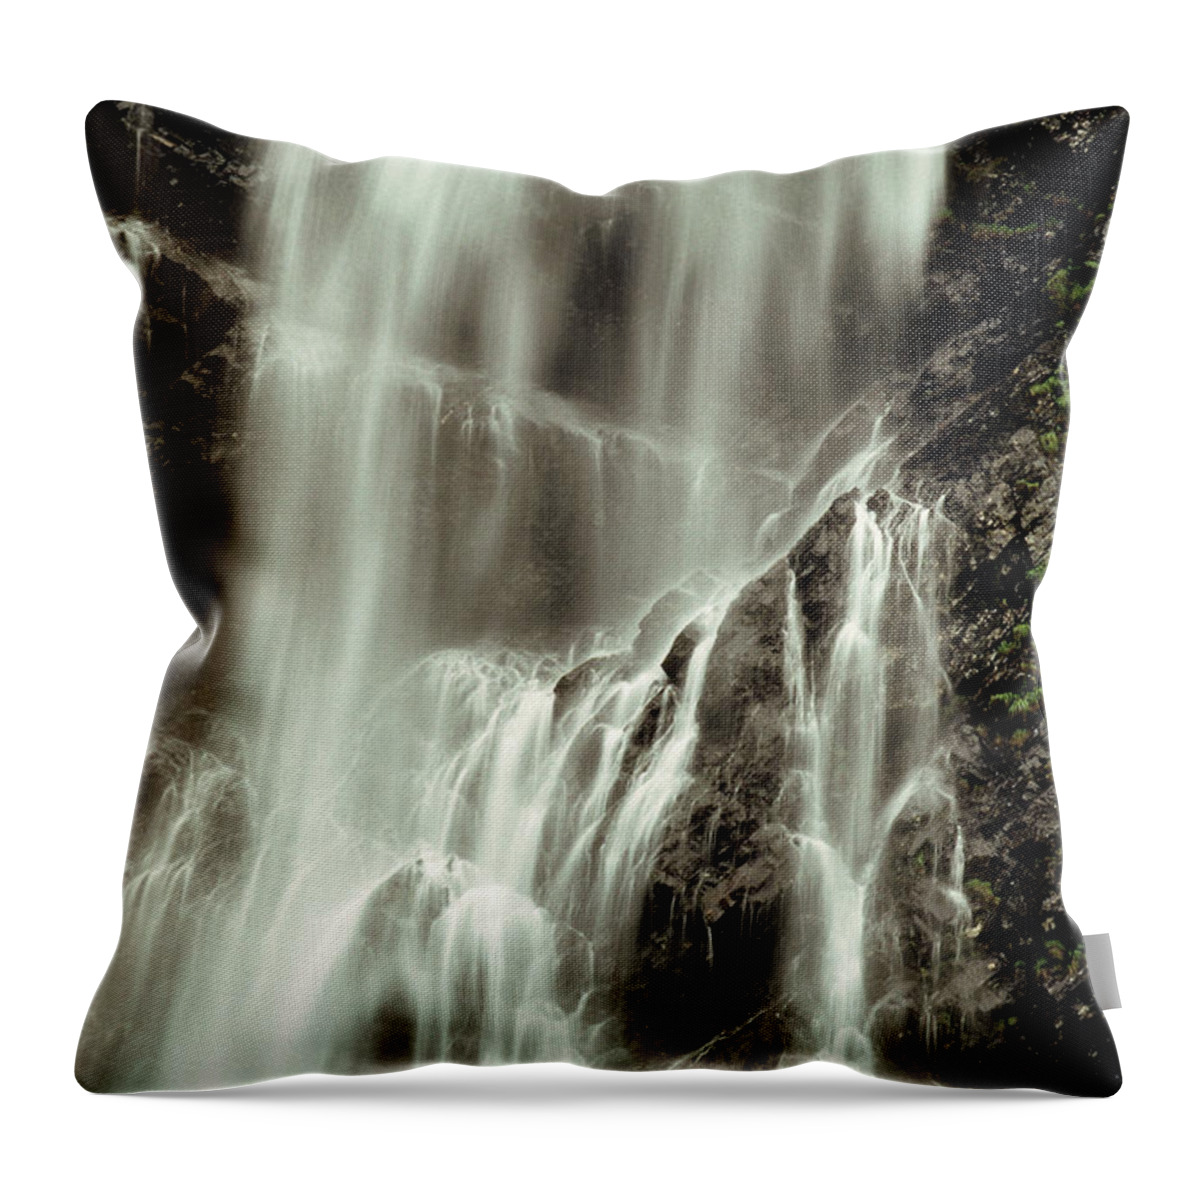 Alaska Throw Pillow featuring the photograph Waterfall Near Valdez, Alaska by Theodore Clutter